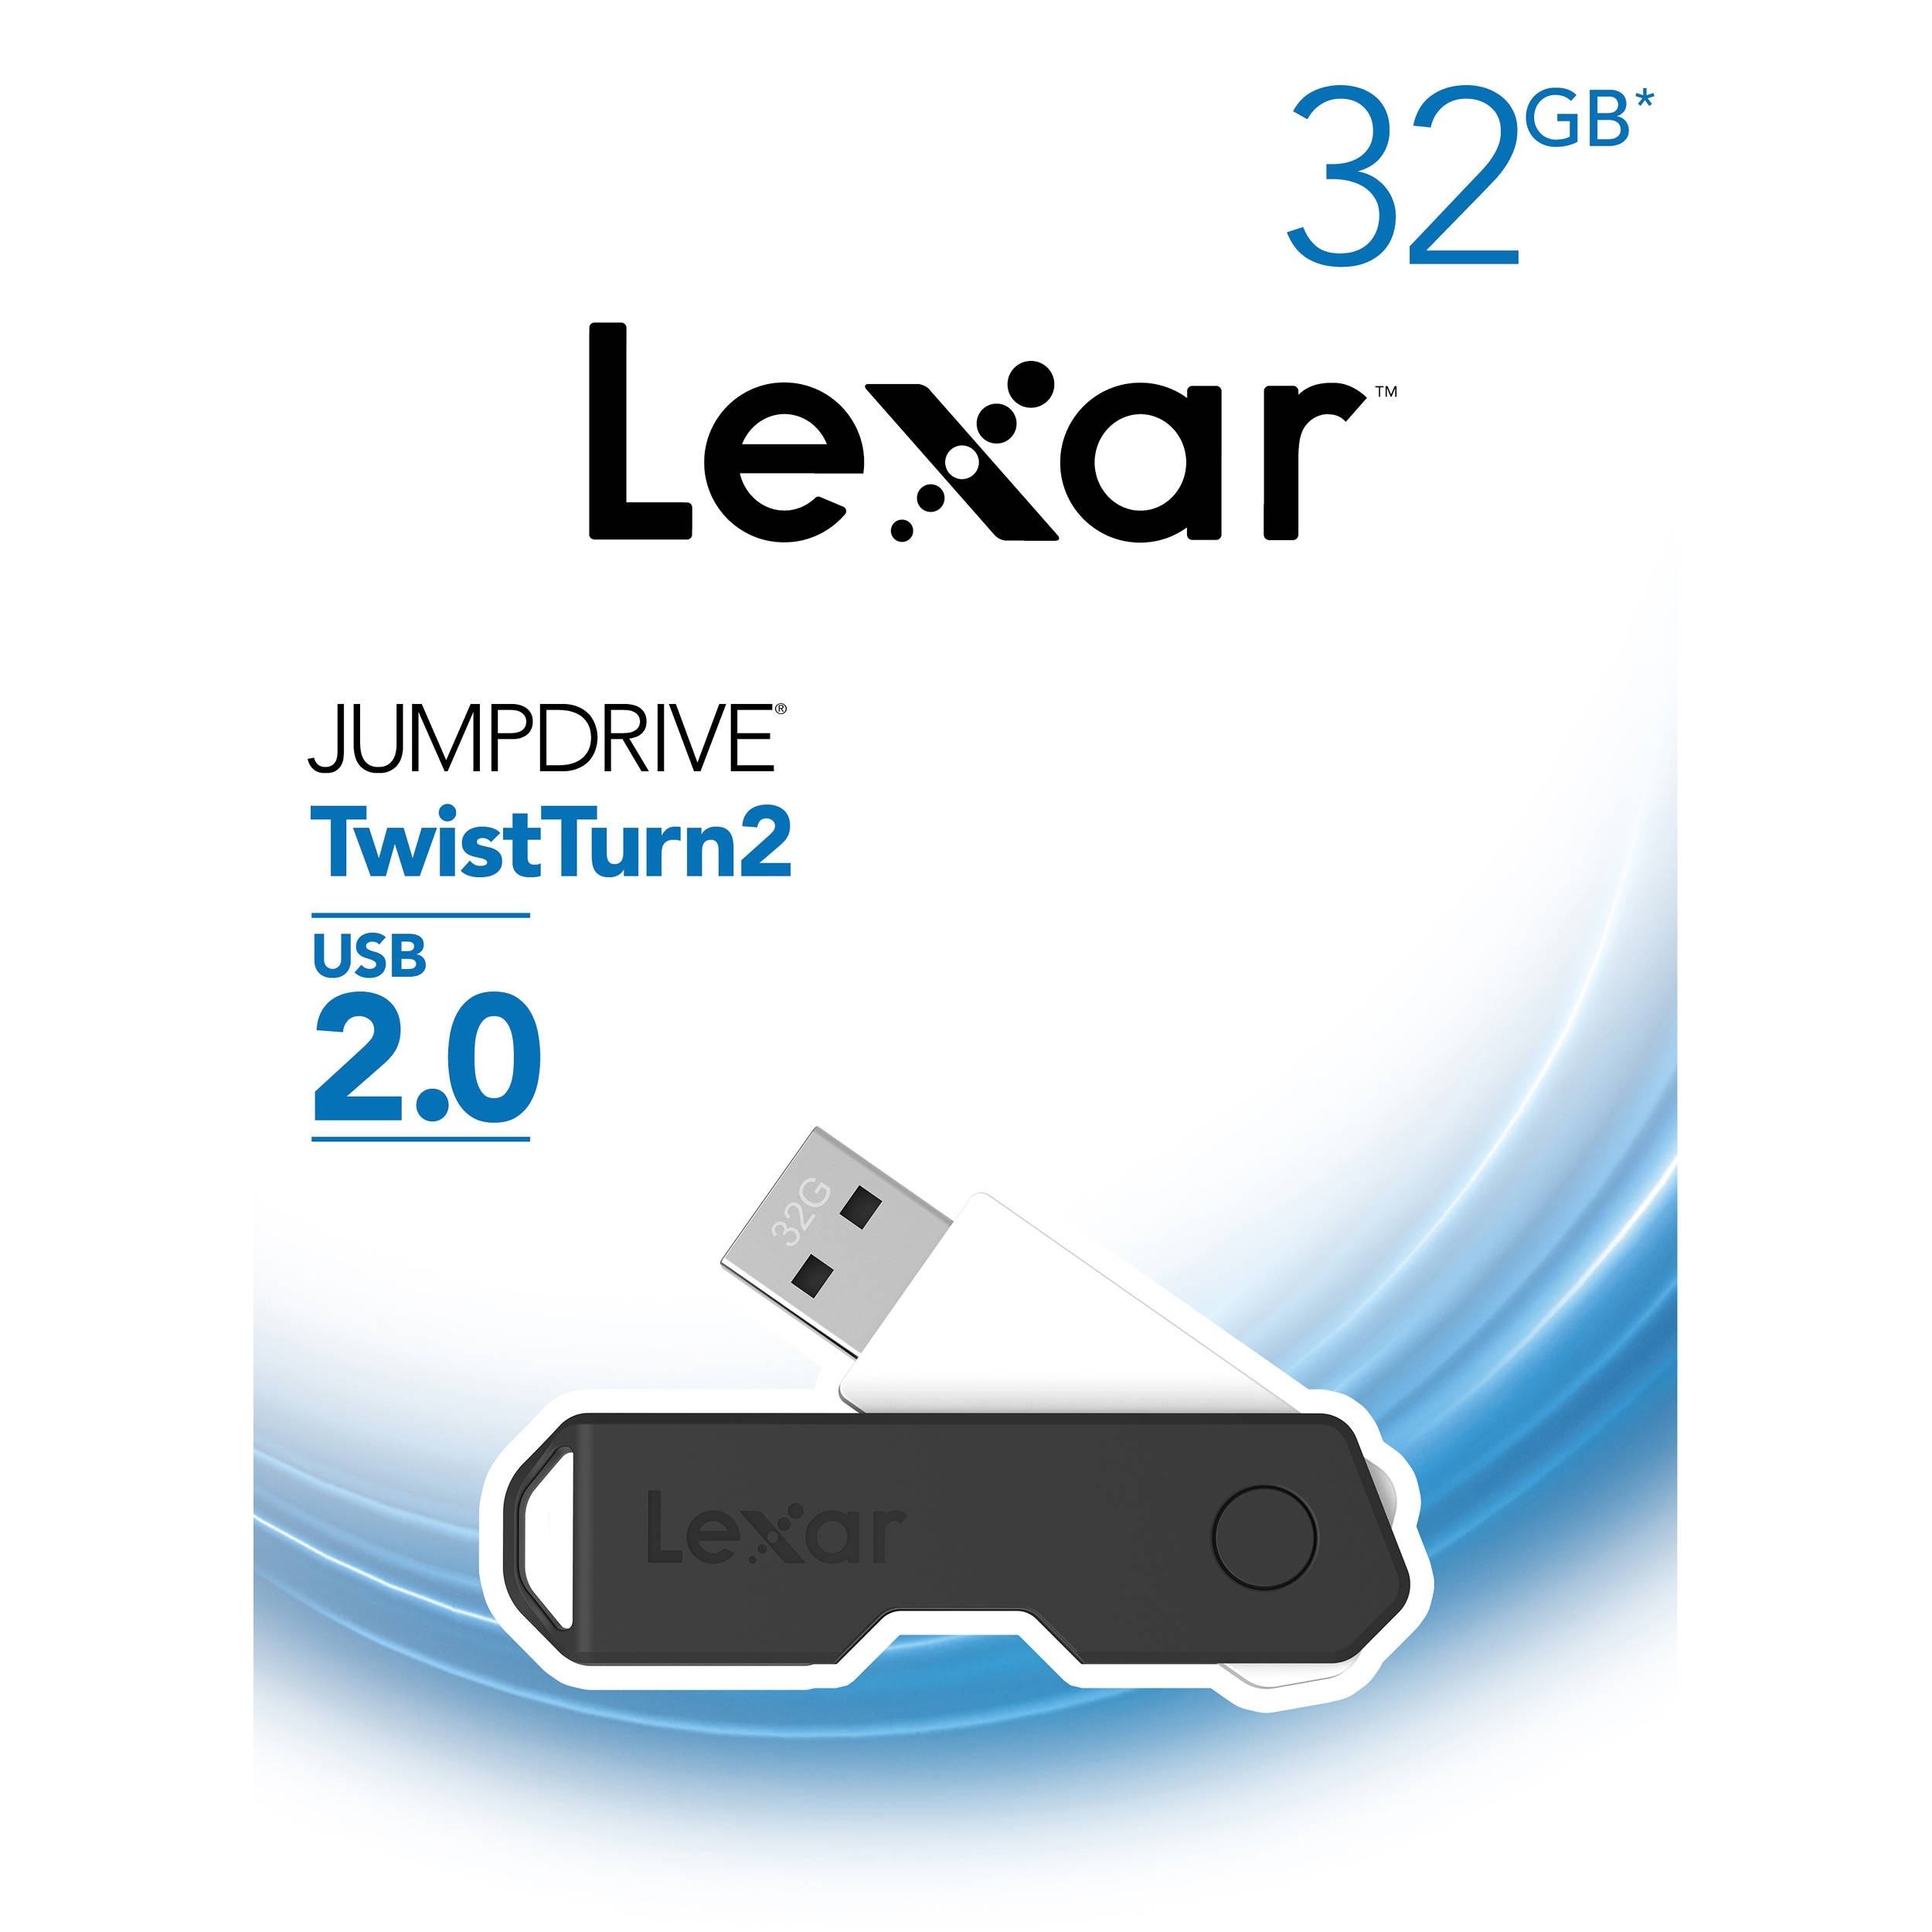 Lexar 32GB JumpDrive TwistTurn2 USB Flash Drive (Black)